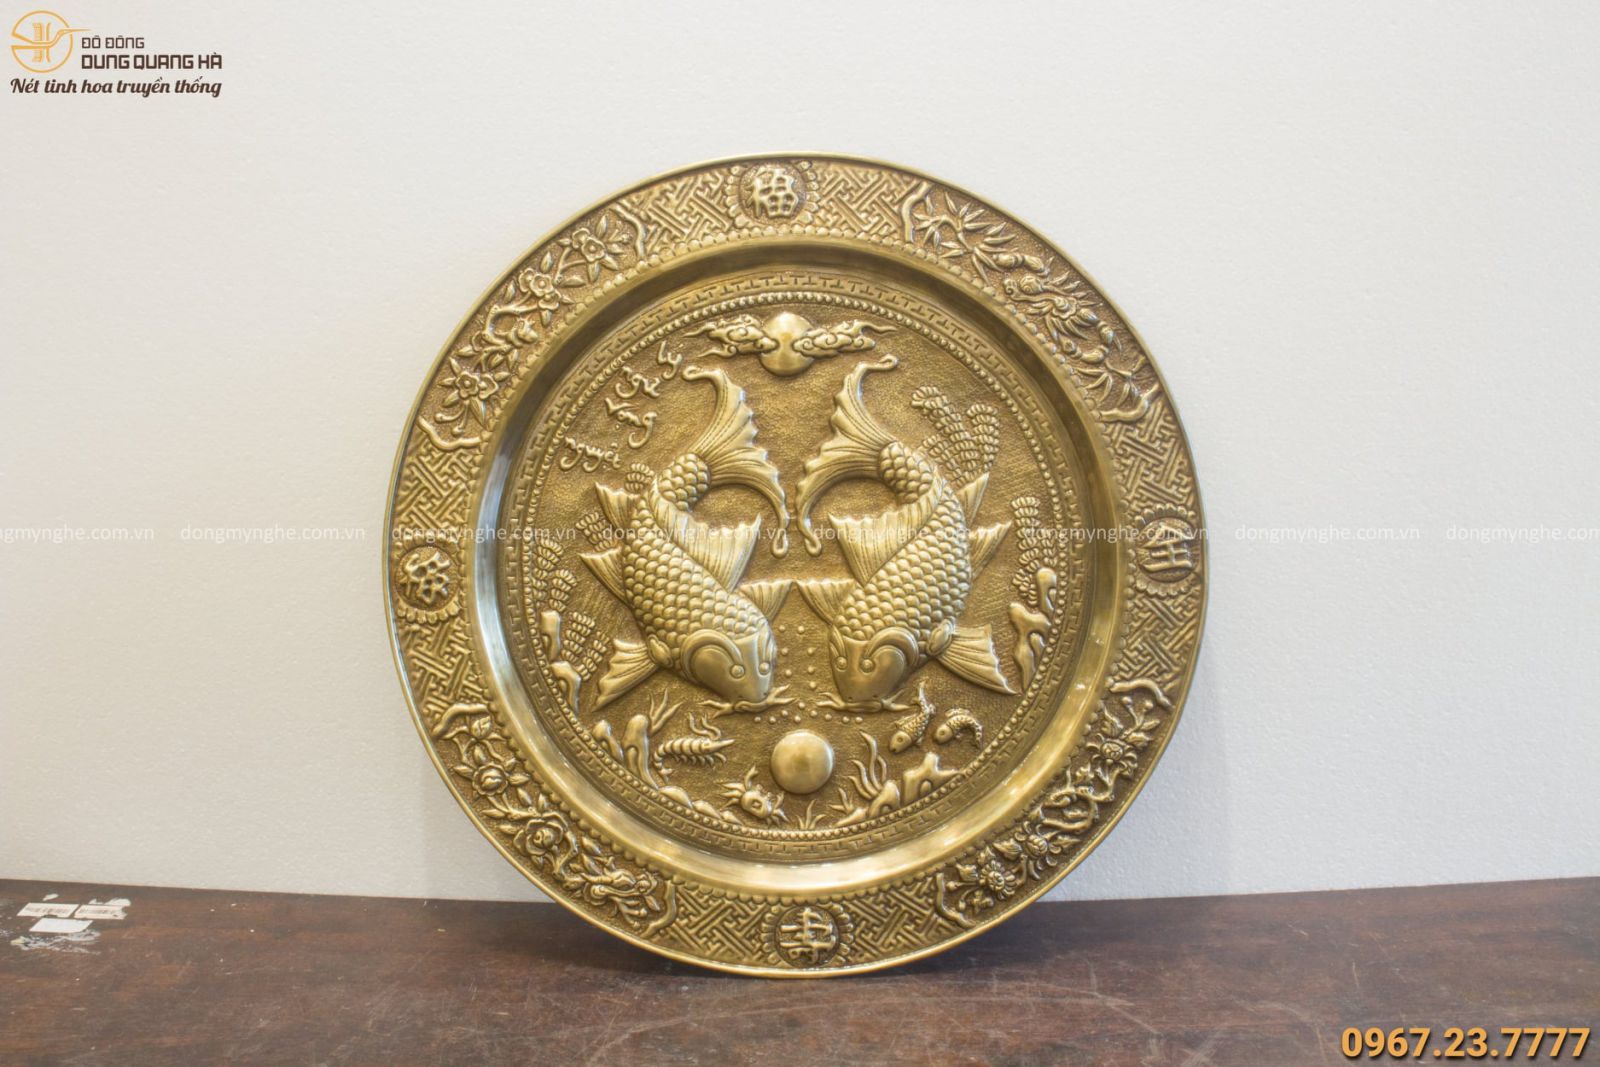 Mâm đồng Lý Ngư Vọng Nguyệt đường kính 50cm bằng đồng vàng